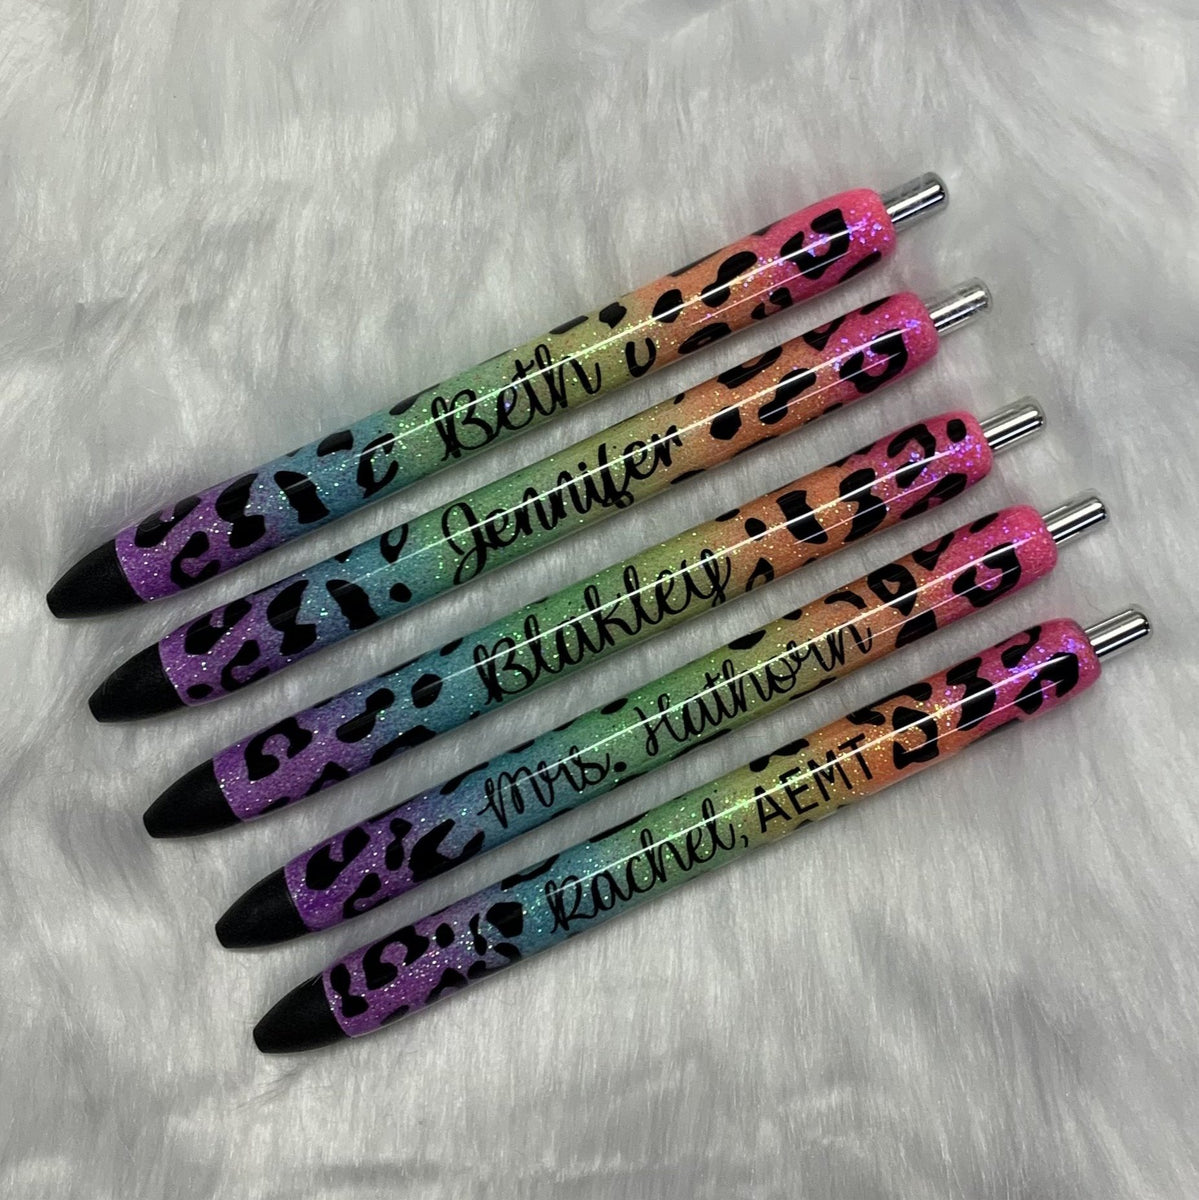  Personalized Ballpoint Pen, Fancy Pens, Glitter Pens